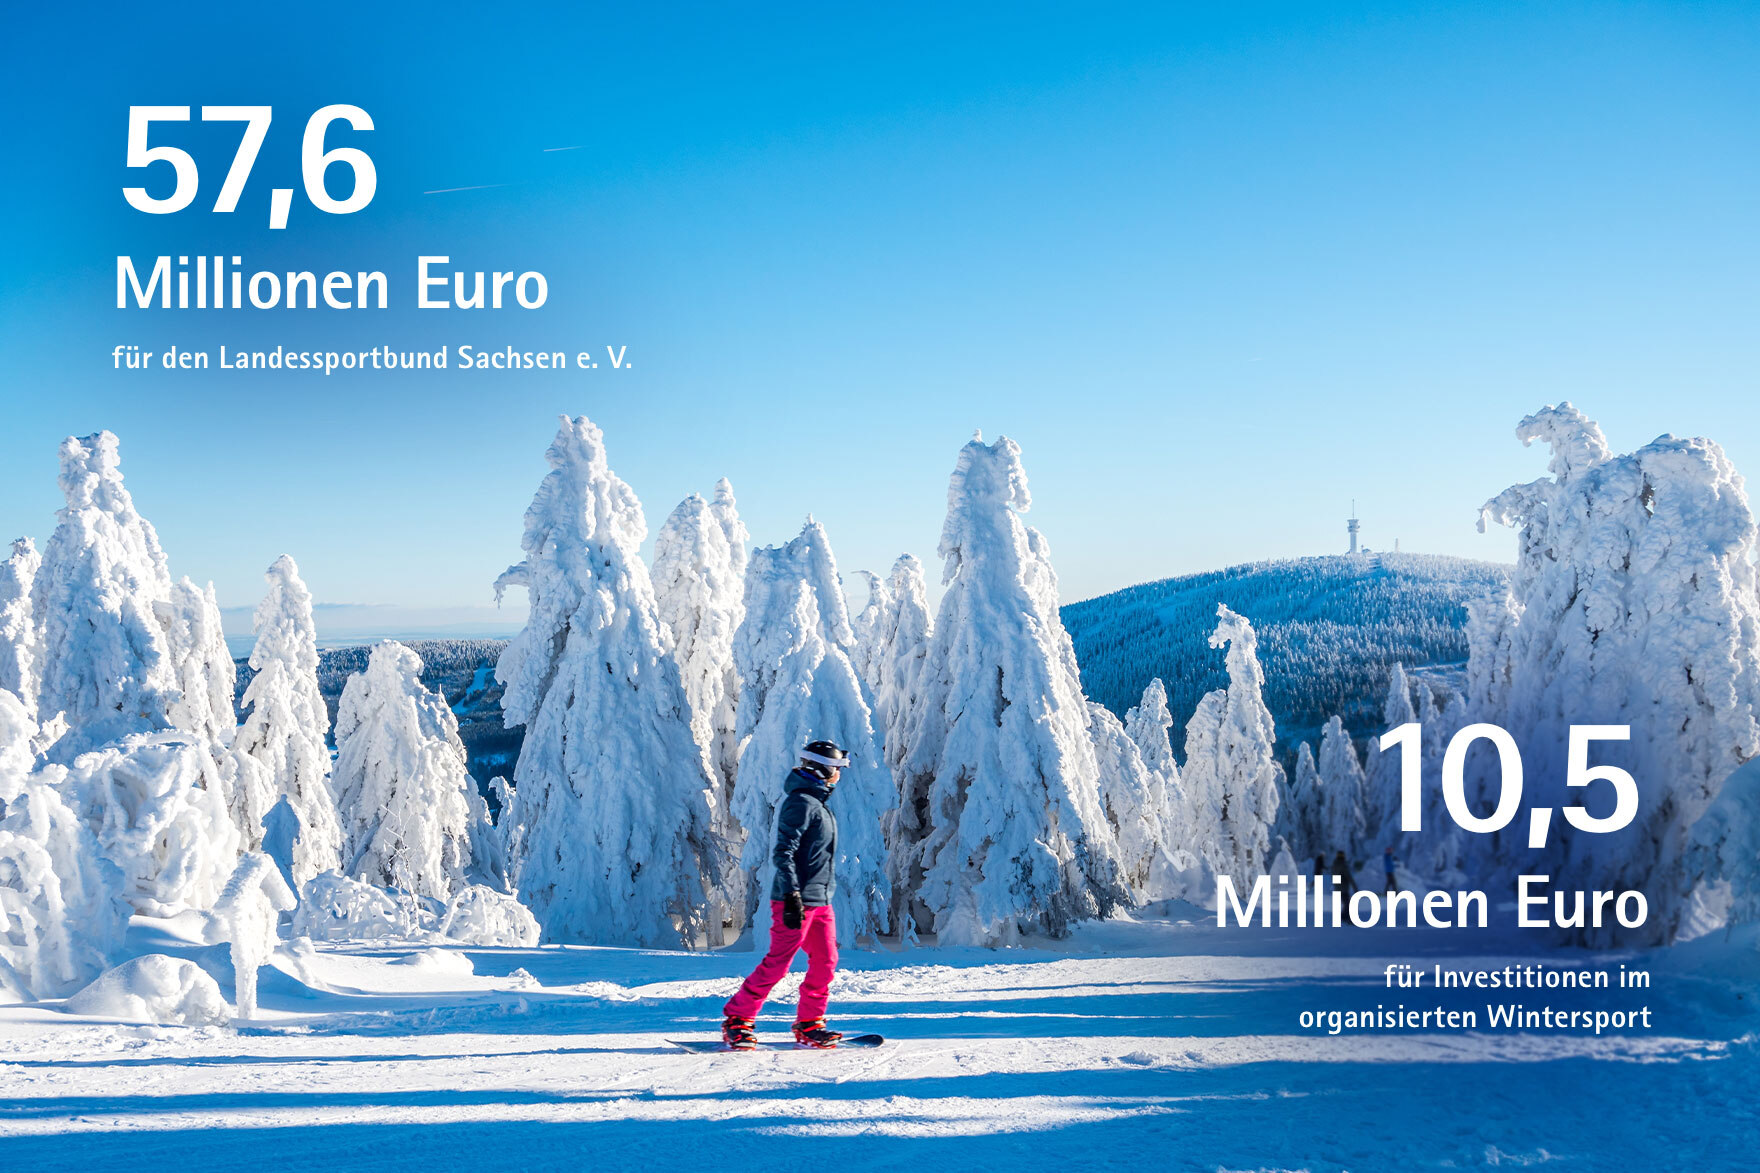 75,6 Millionen Euro für den Landessportbund Sachsen e. V., 10,5 Millionen Euro für Investitionen im organisierten Wintersport